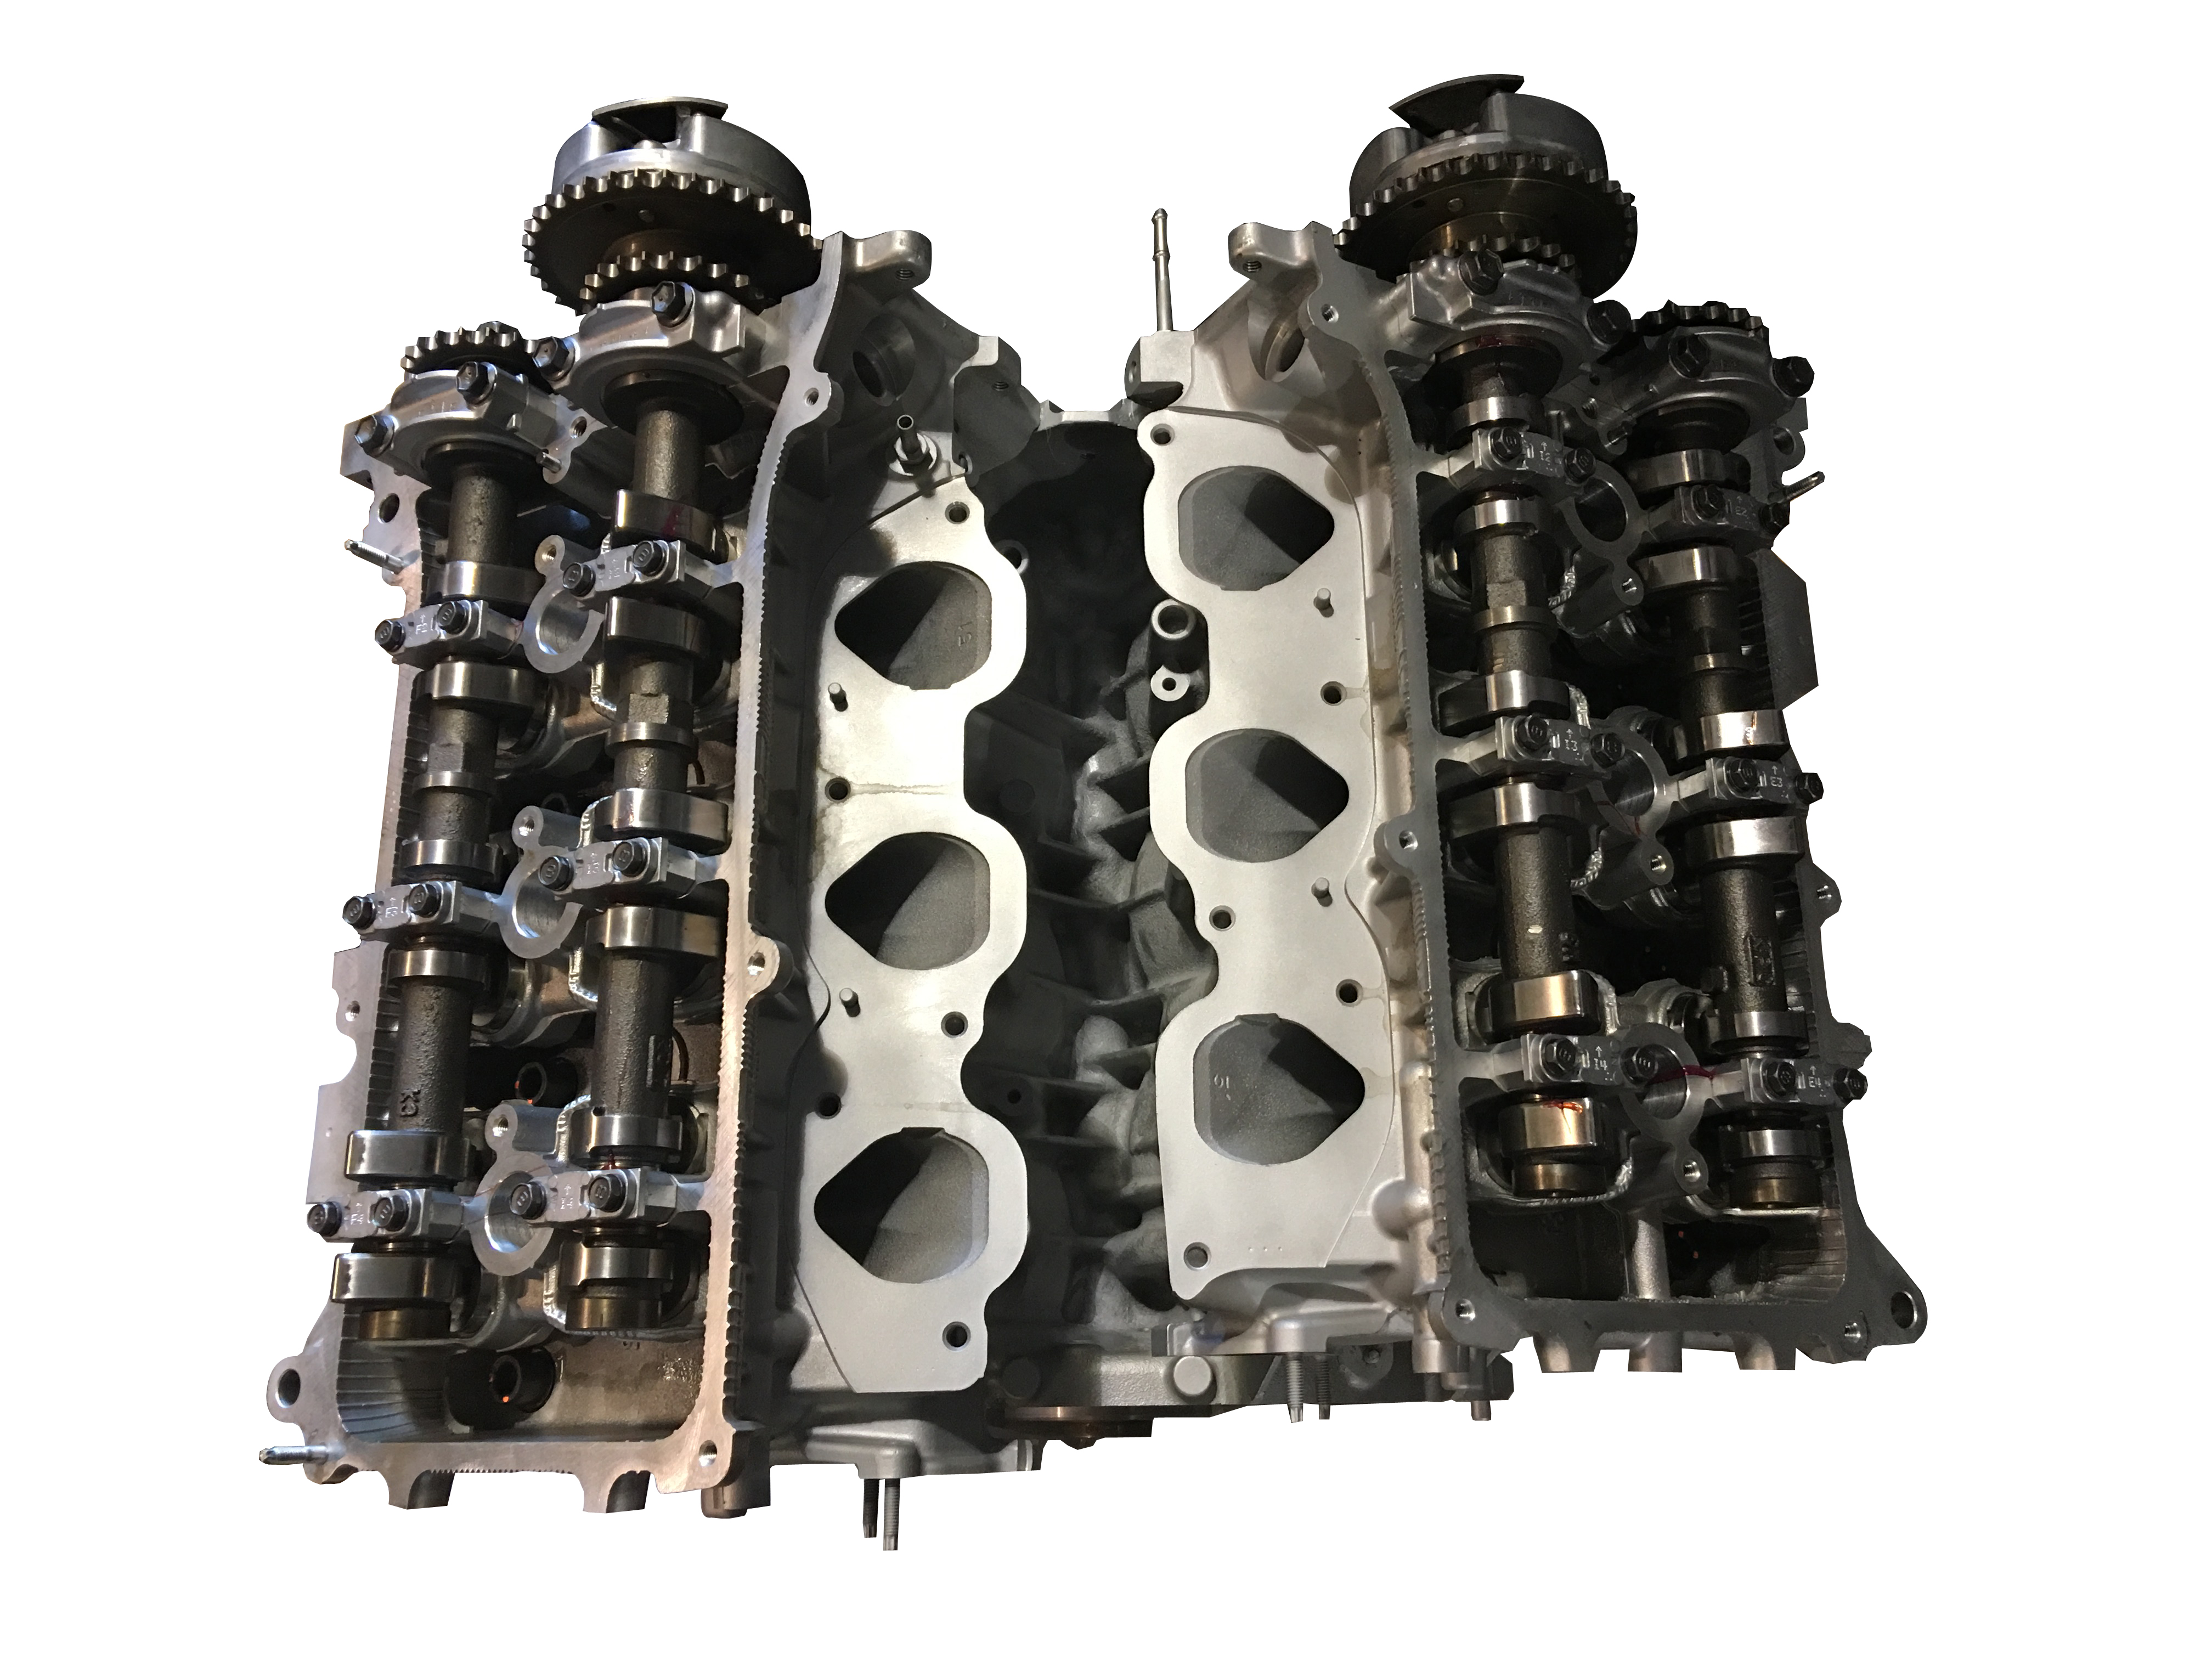 Rebuilt Toyota 1GR FE engine f